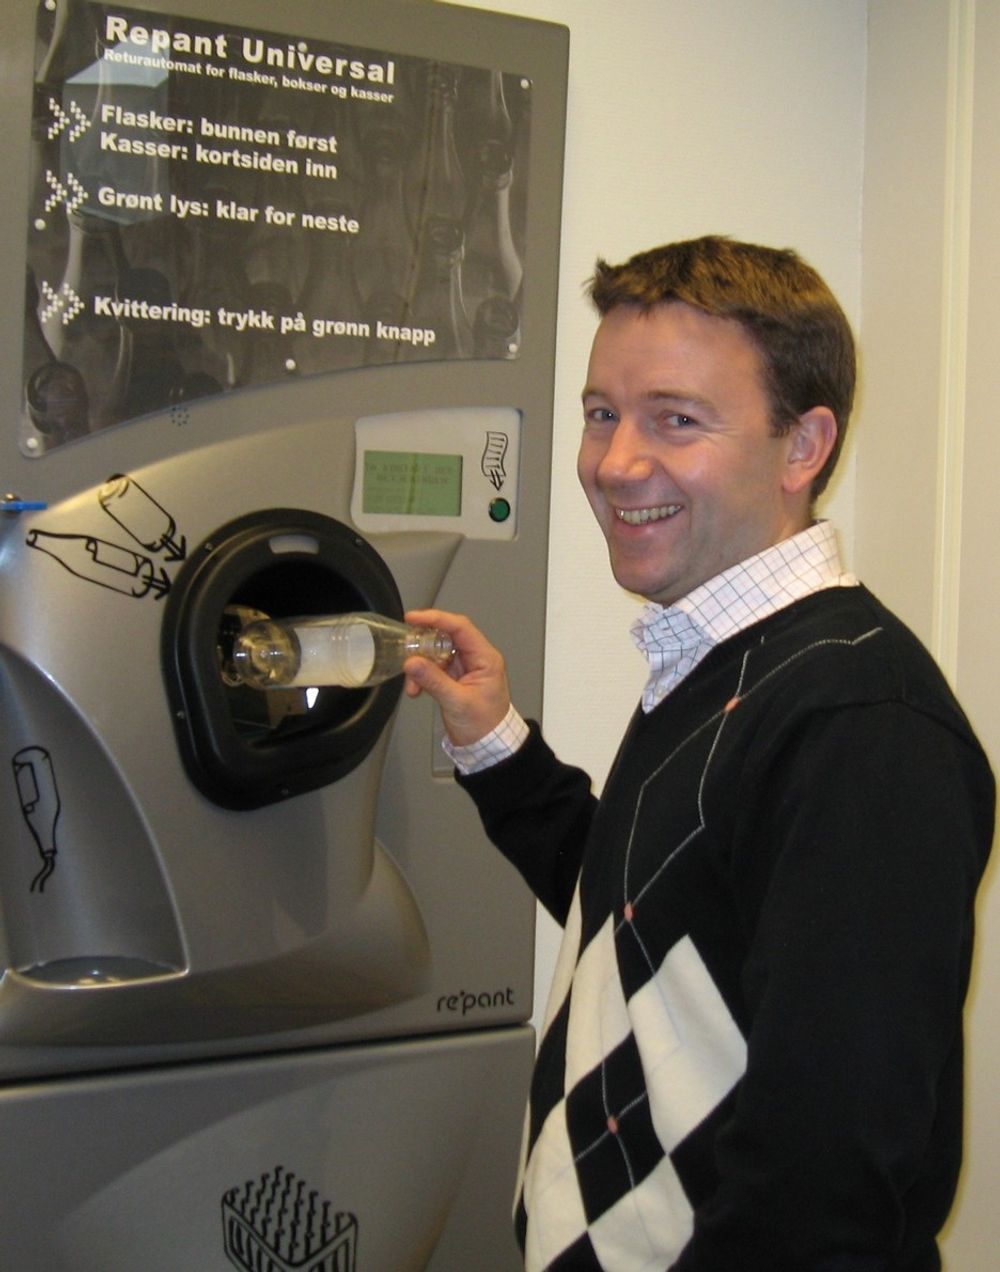 GODKJENT: Repants automater er godkjent til nytt tysk system. Det er direktør Christian Andersen fornøyd med.